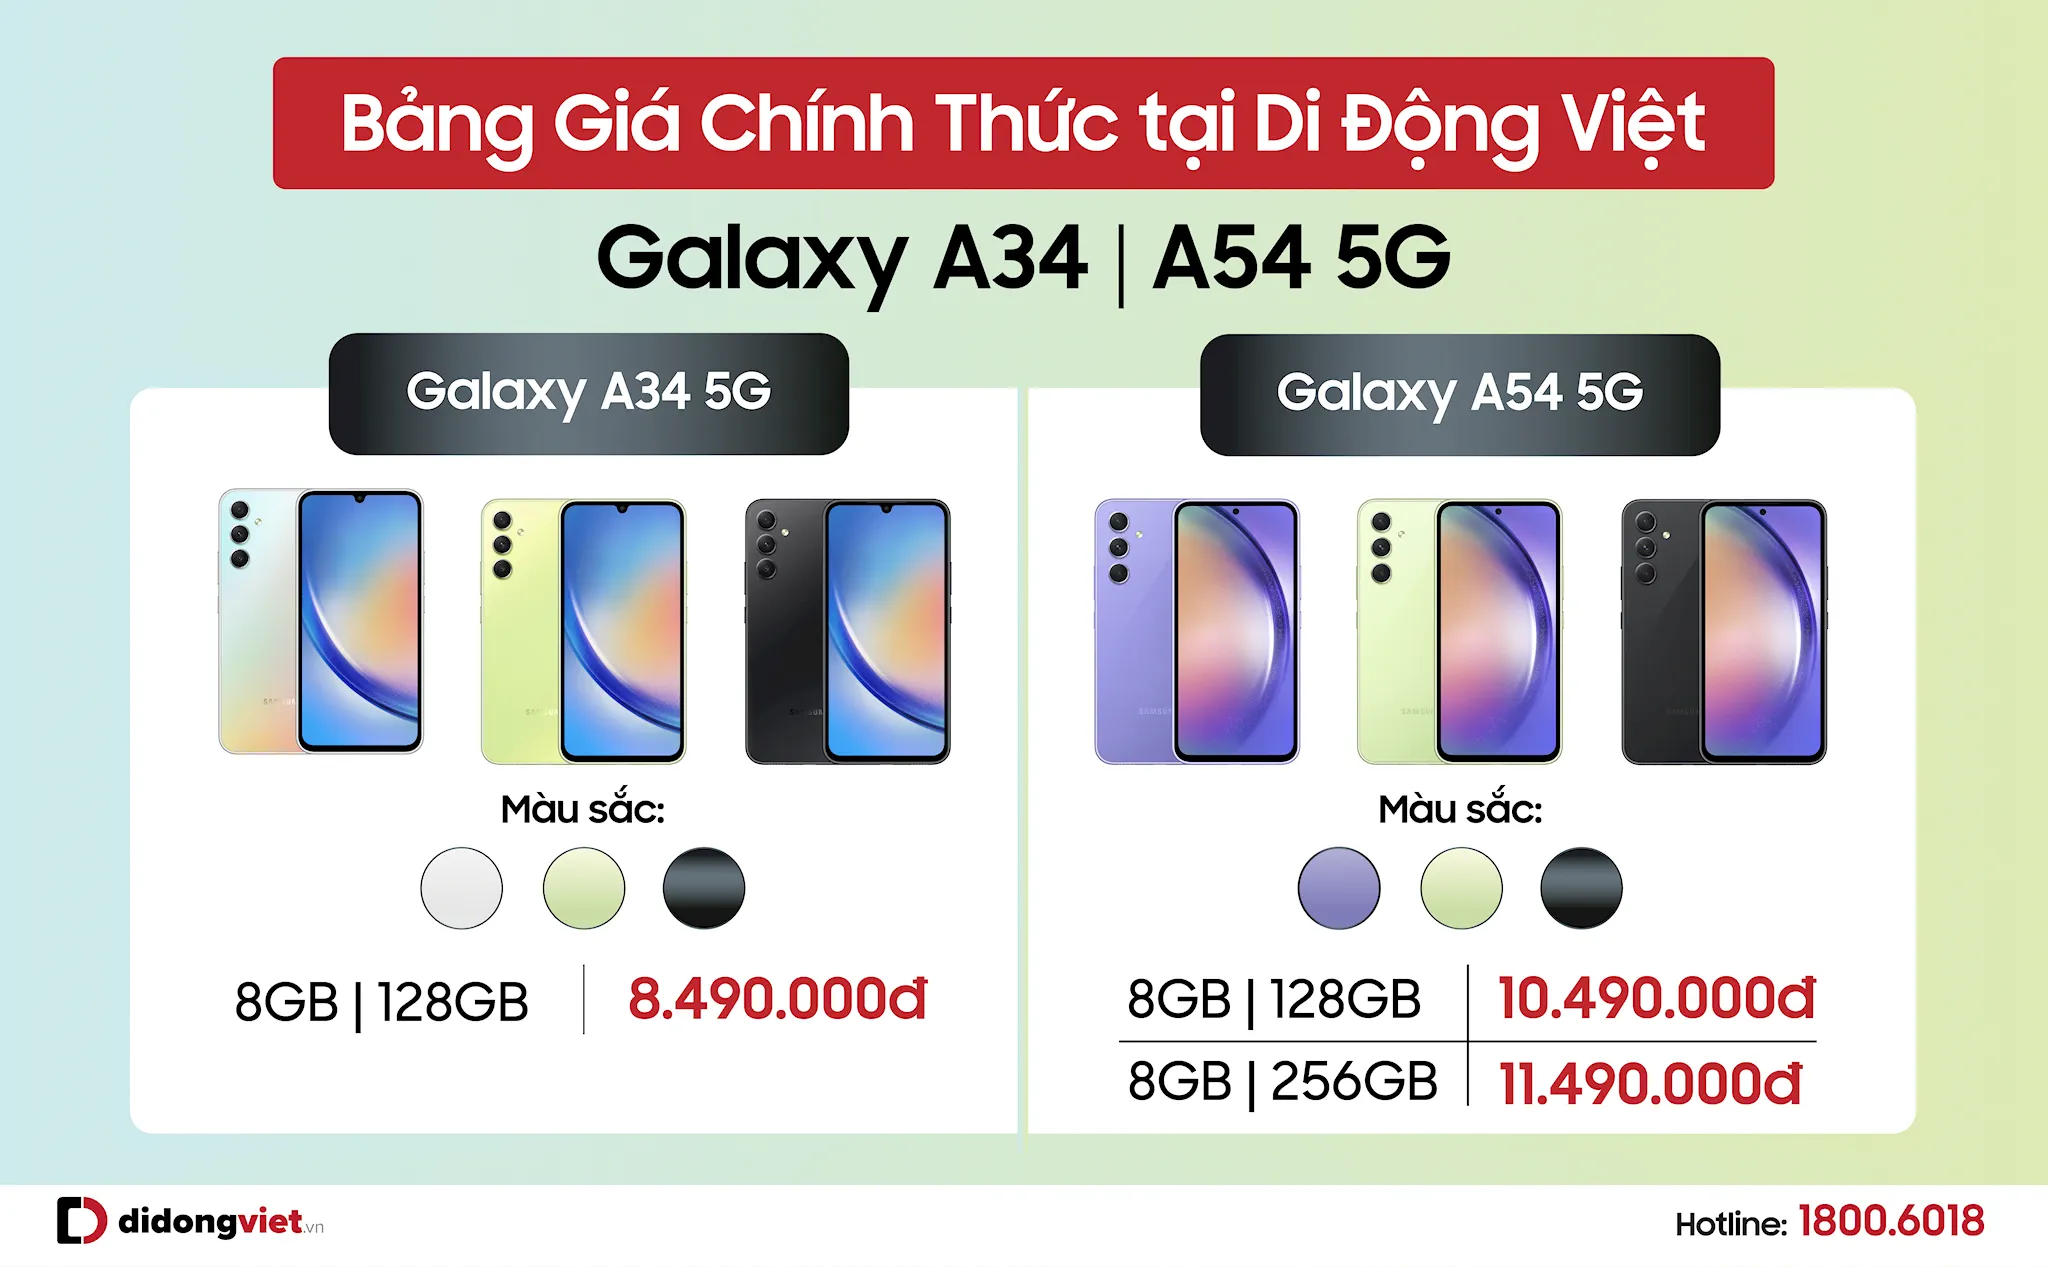 Di Động Việt nhận đặt trước Galaxy A34 và Galaxy A54 5G từ 8.49 triệu đồng, kèm ưu đãi hơn 4 triệu đồng